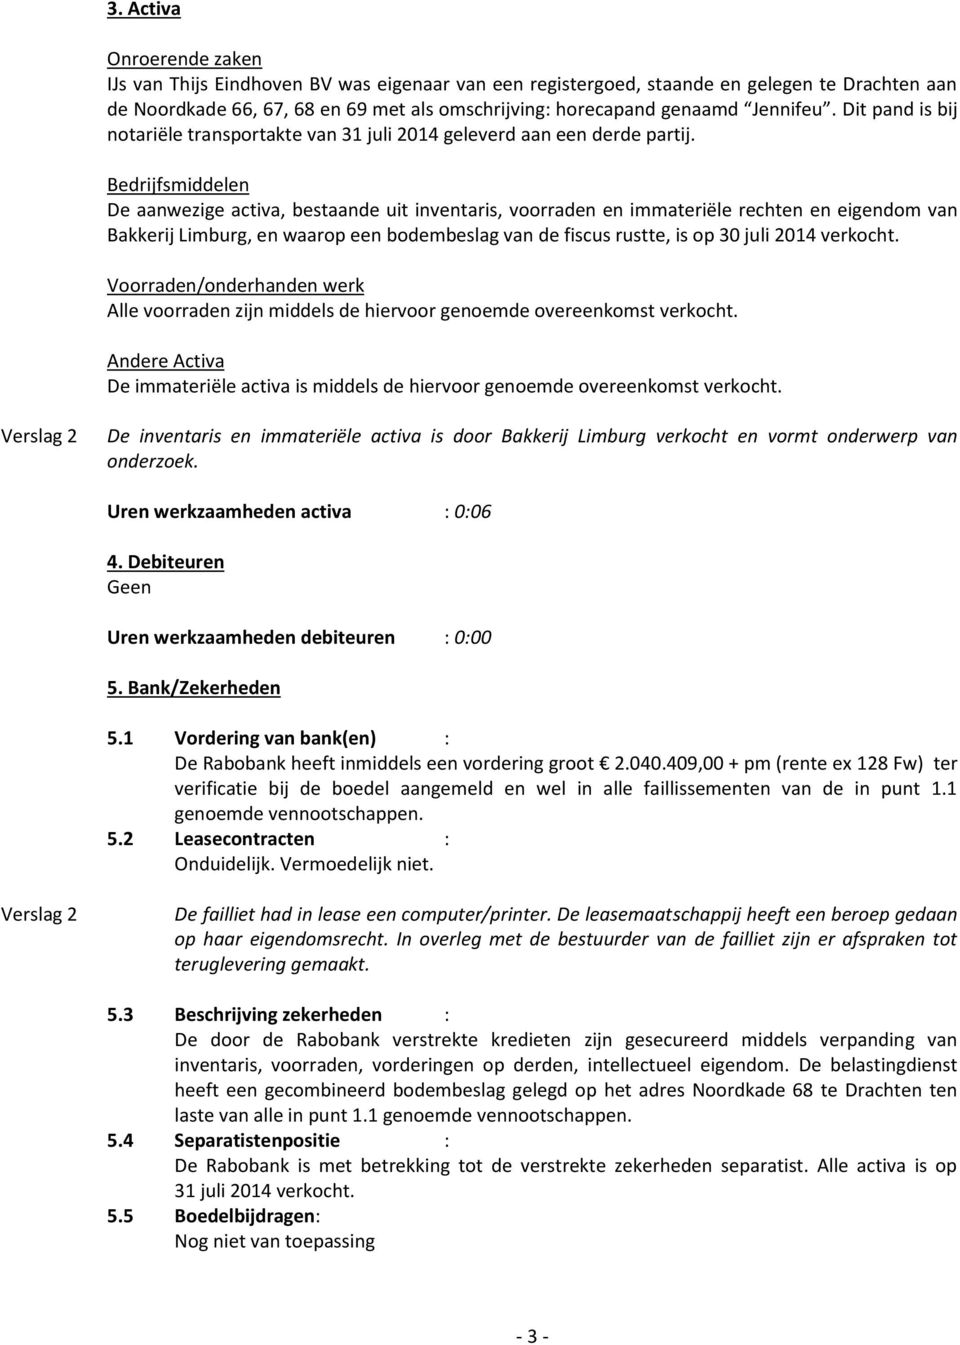 Bedrijfsmiddelen De aanwezige activa, bestaande uit inventaris, voorraden en immateriële rechten en eigendom van Bakkerij Limburg, en waarop een bodembeslag van de fiscus rustte, is op 30 juli 2014